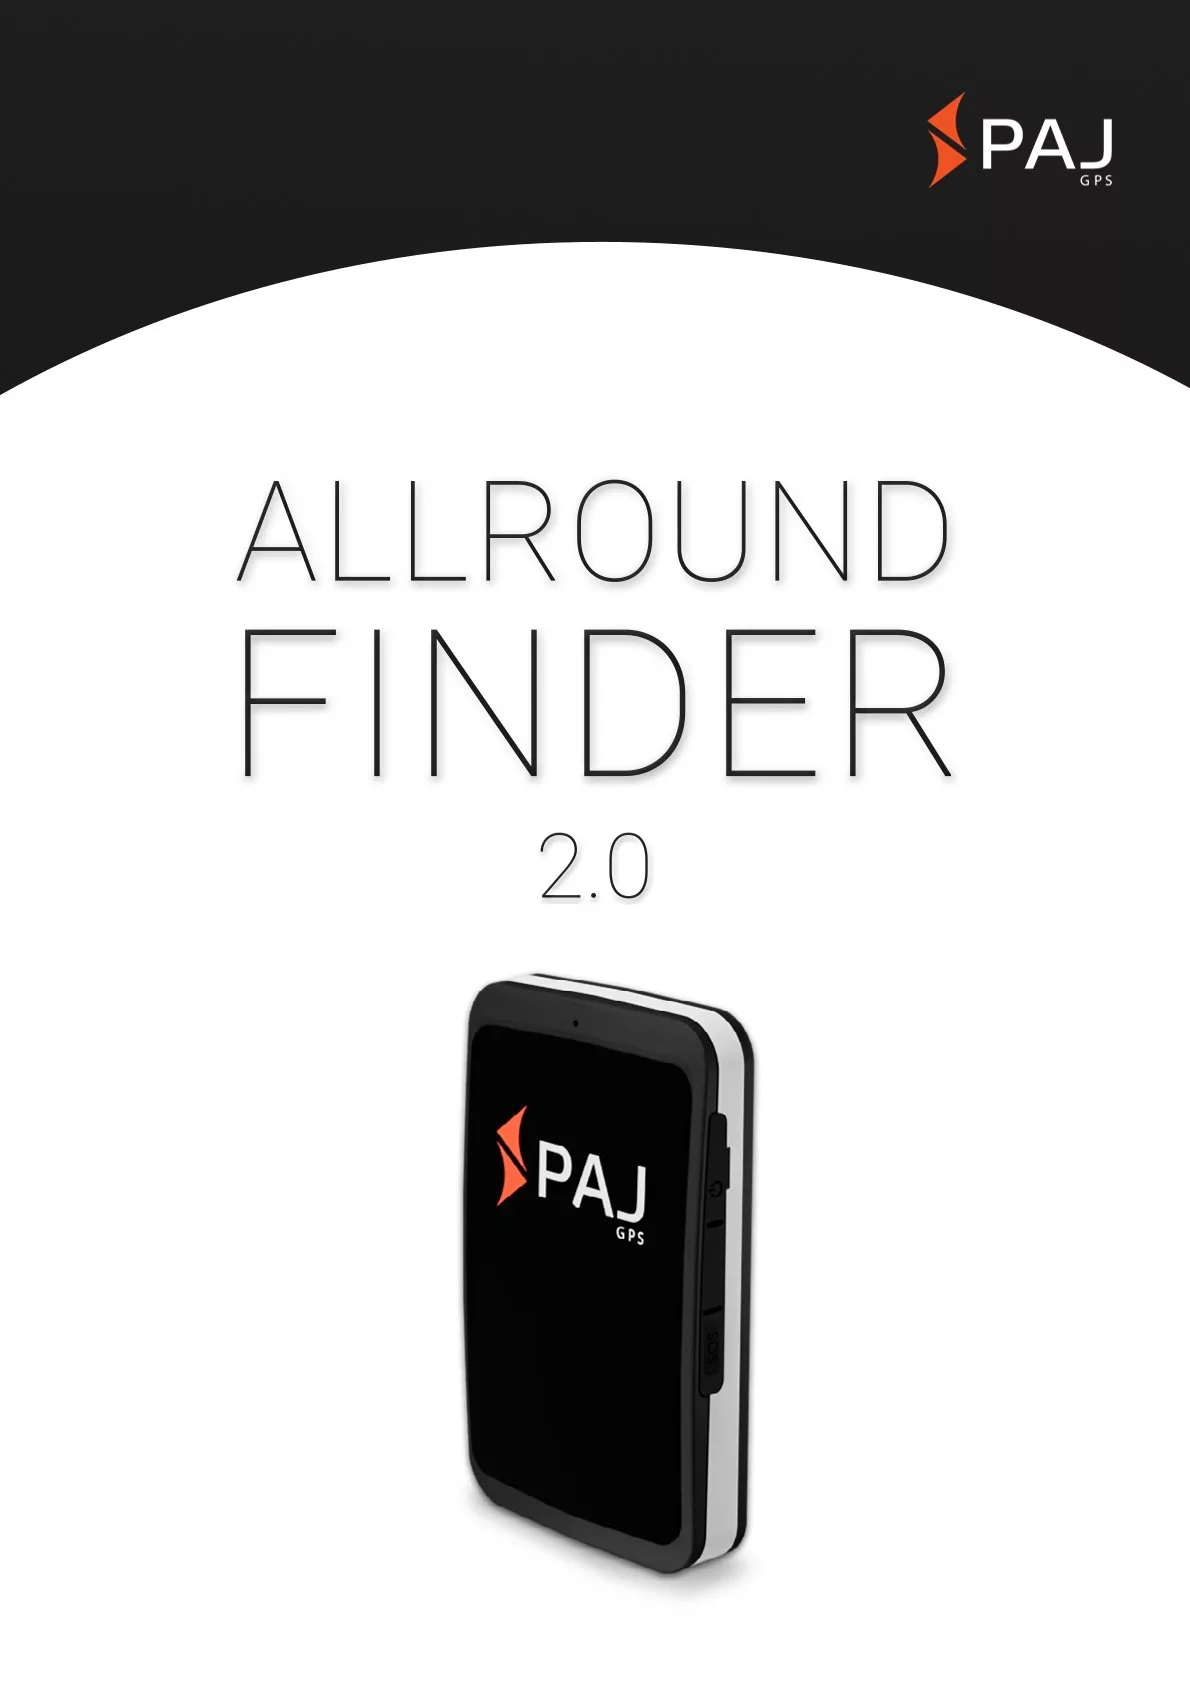 Immagine di copertina per scheda tecnica ALLROUND Finder 2.0